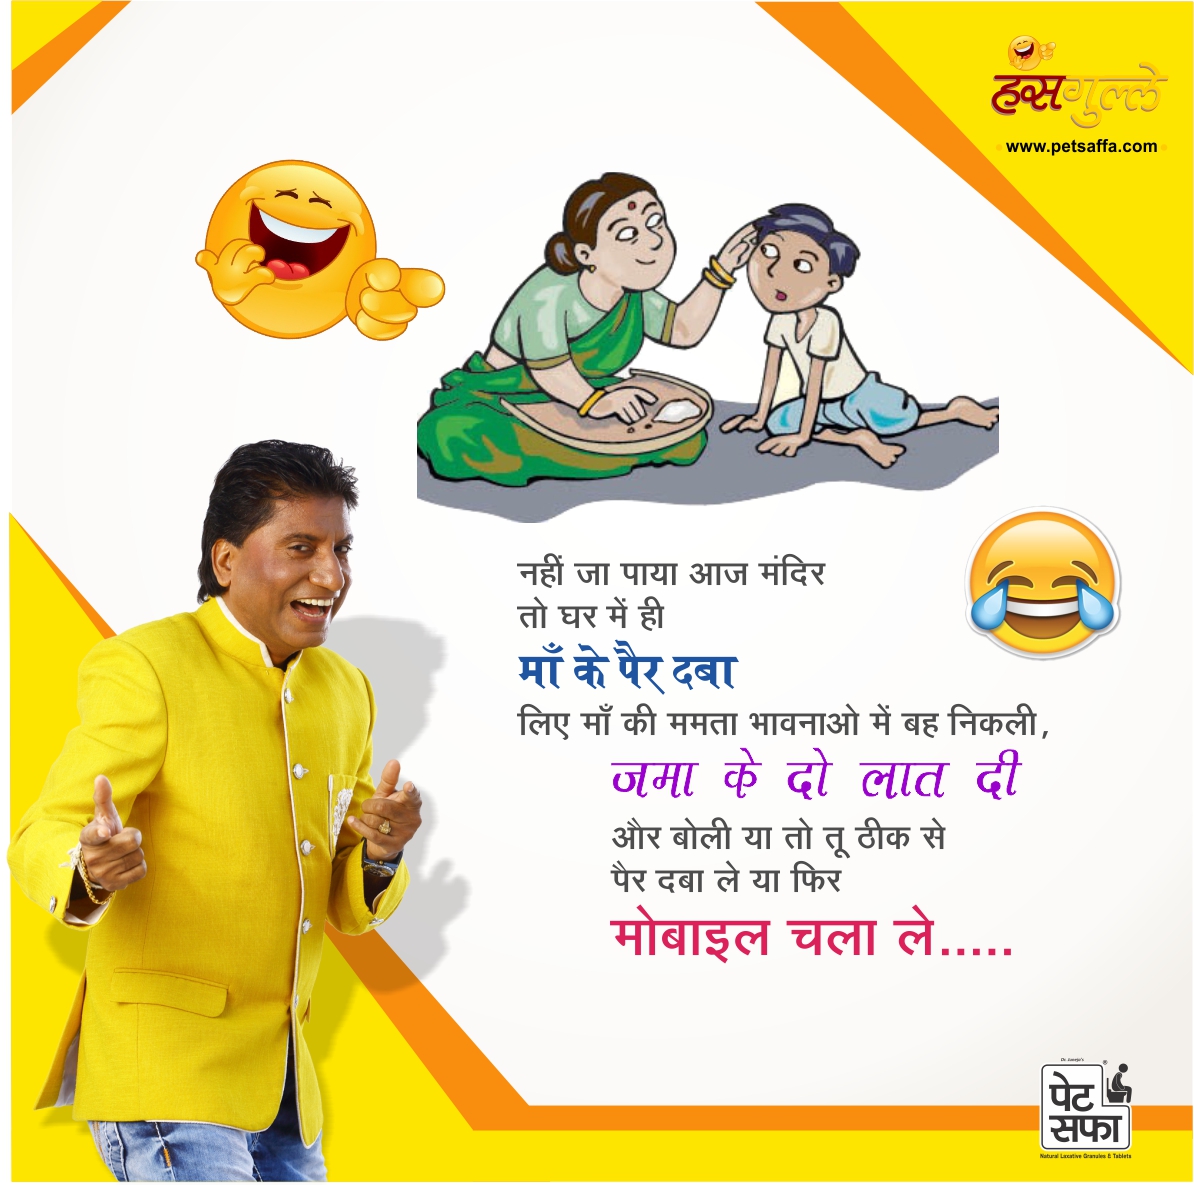 Hindi Jokes - Jokes in Hindi